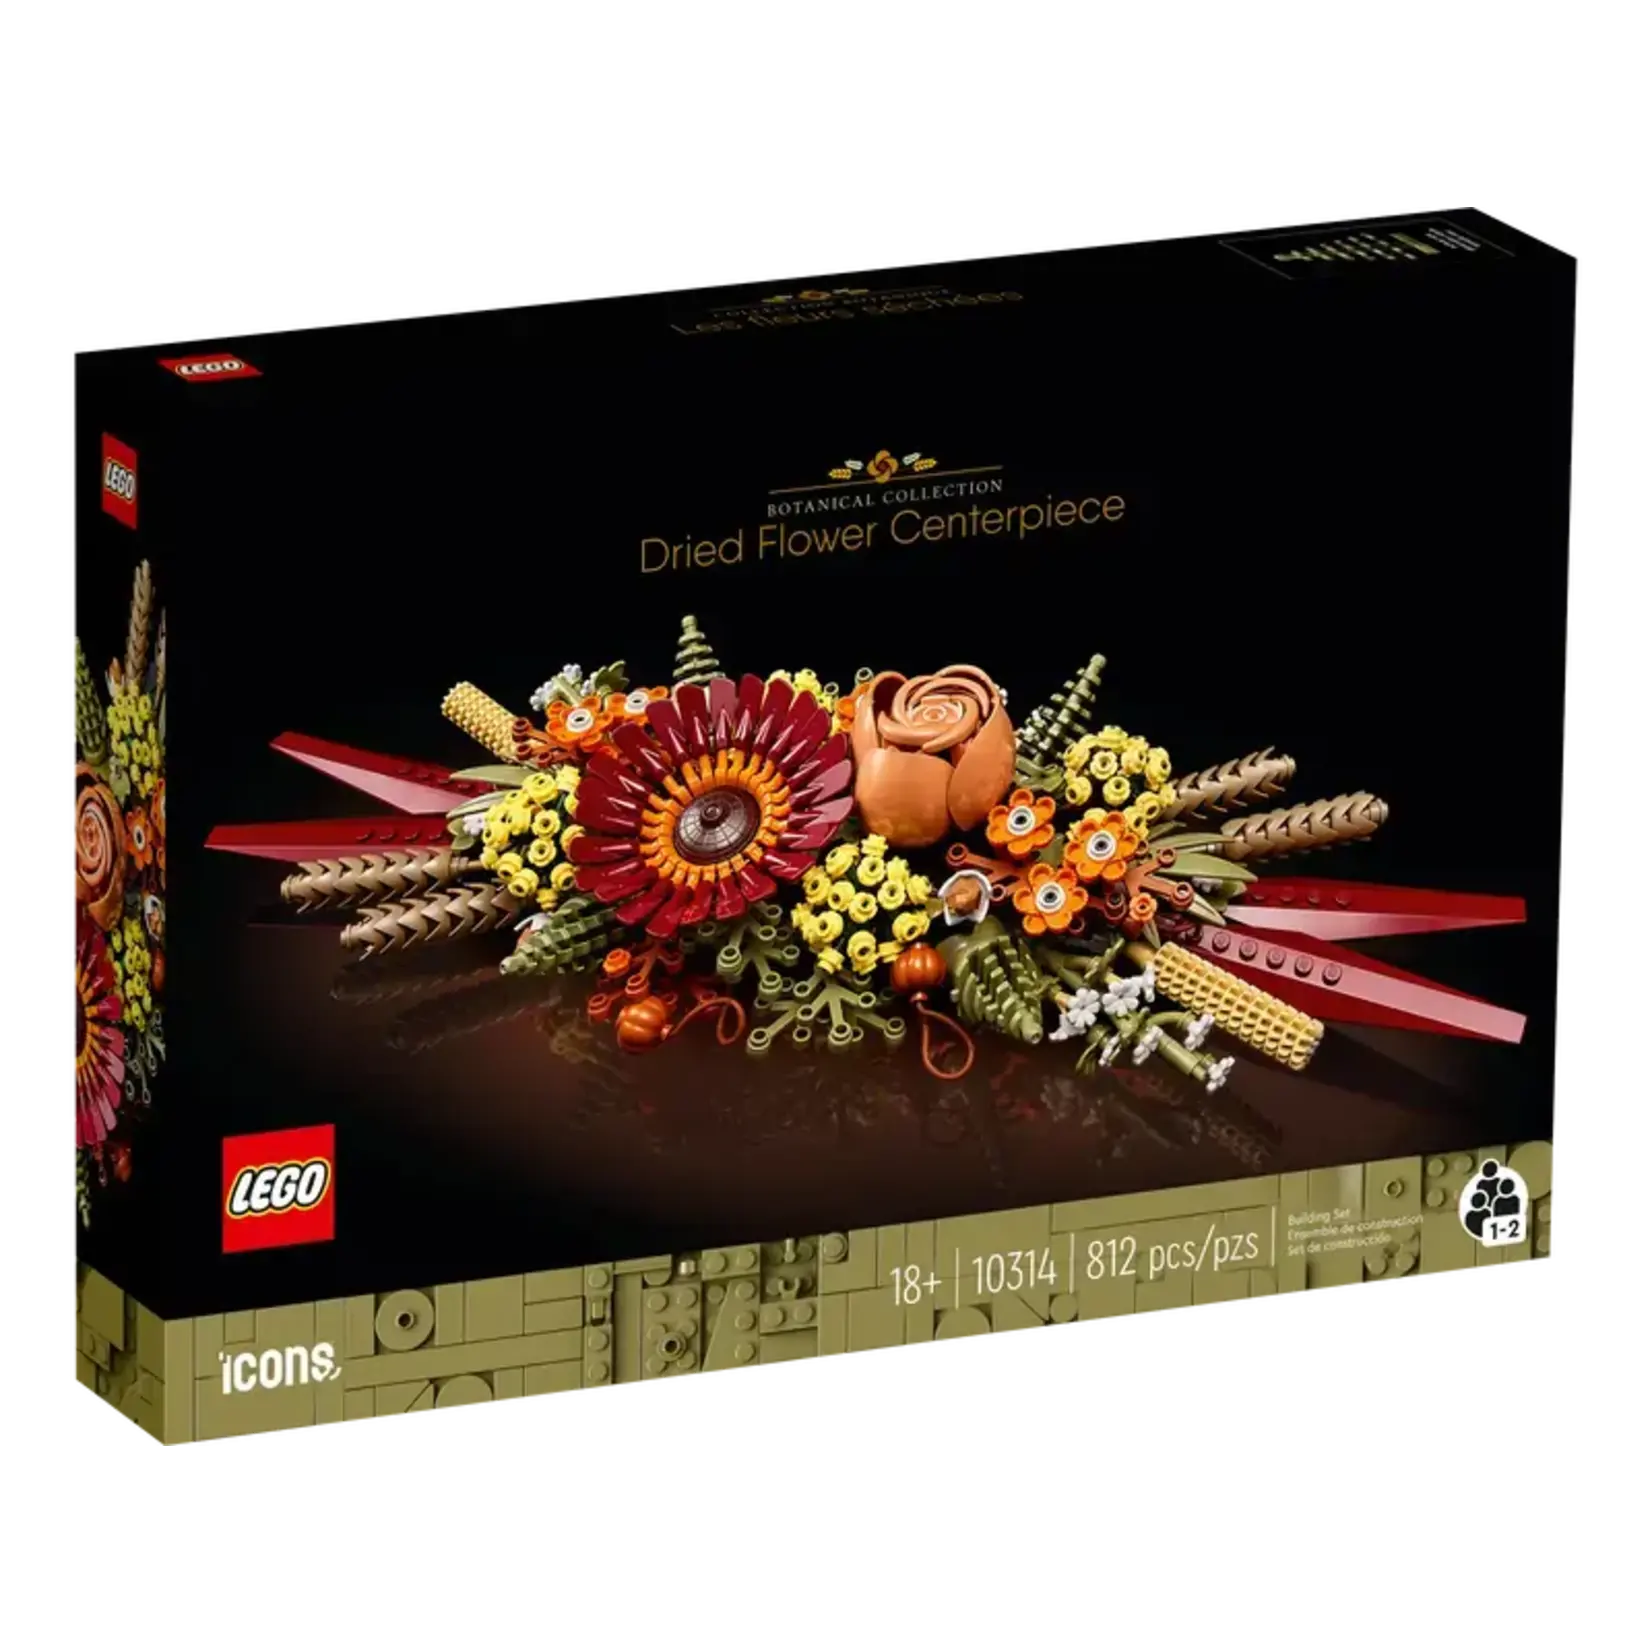 Lego Botanicals Dried Flower Centrepiece